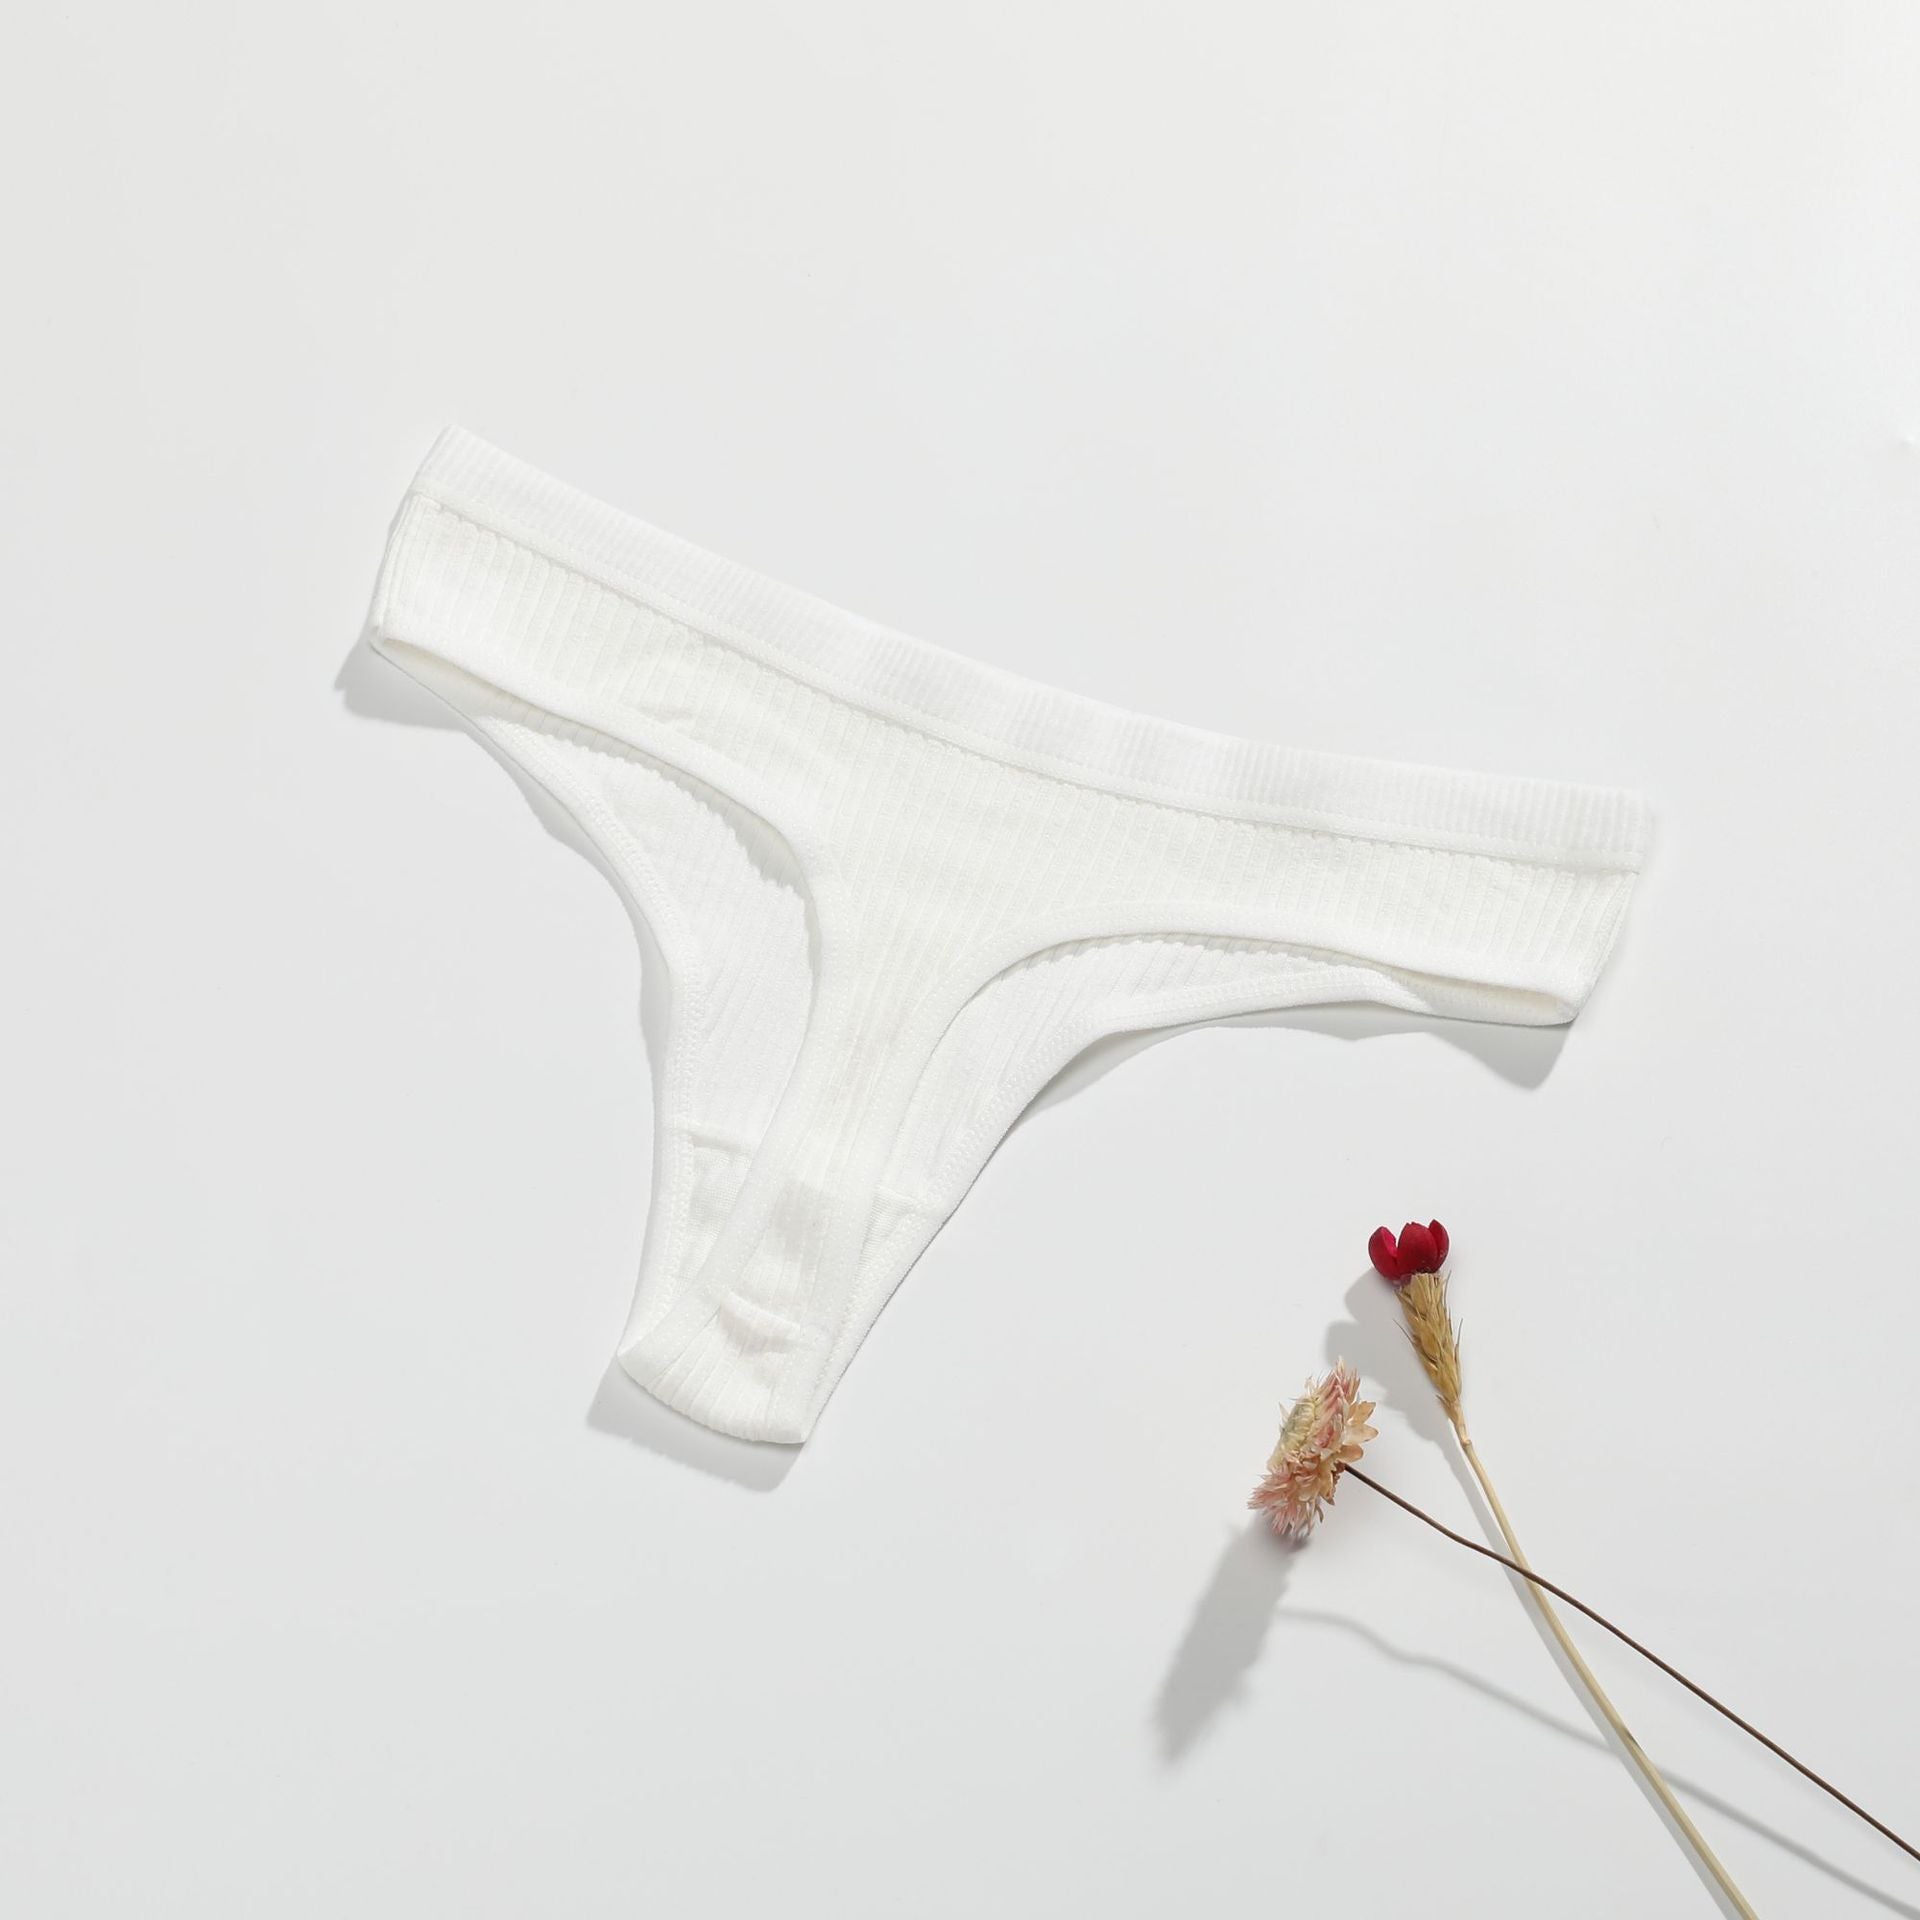 Briefs Women S Lace Lingerie Underwear Open Open Erotic Seamless